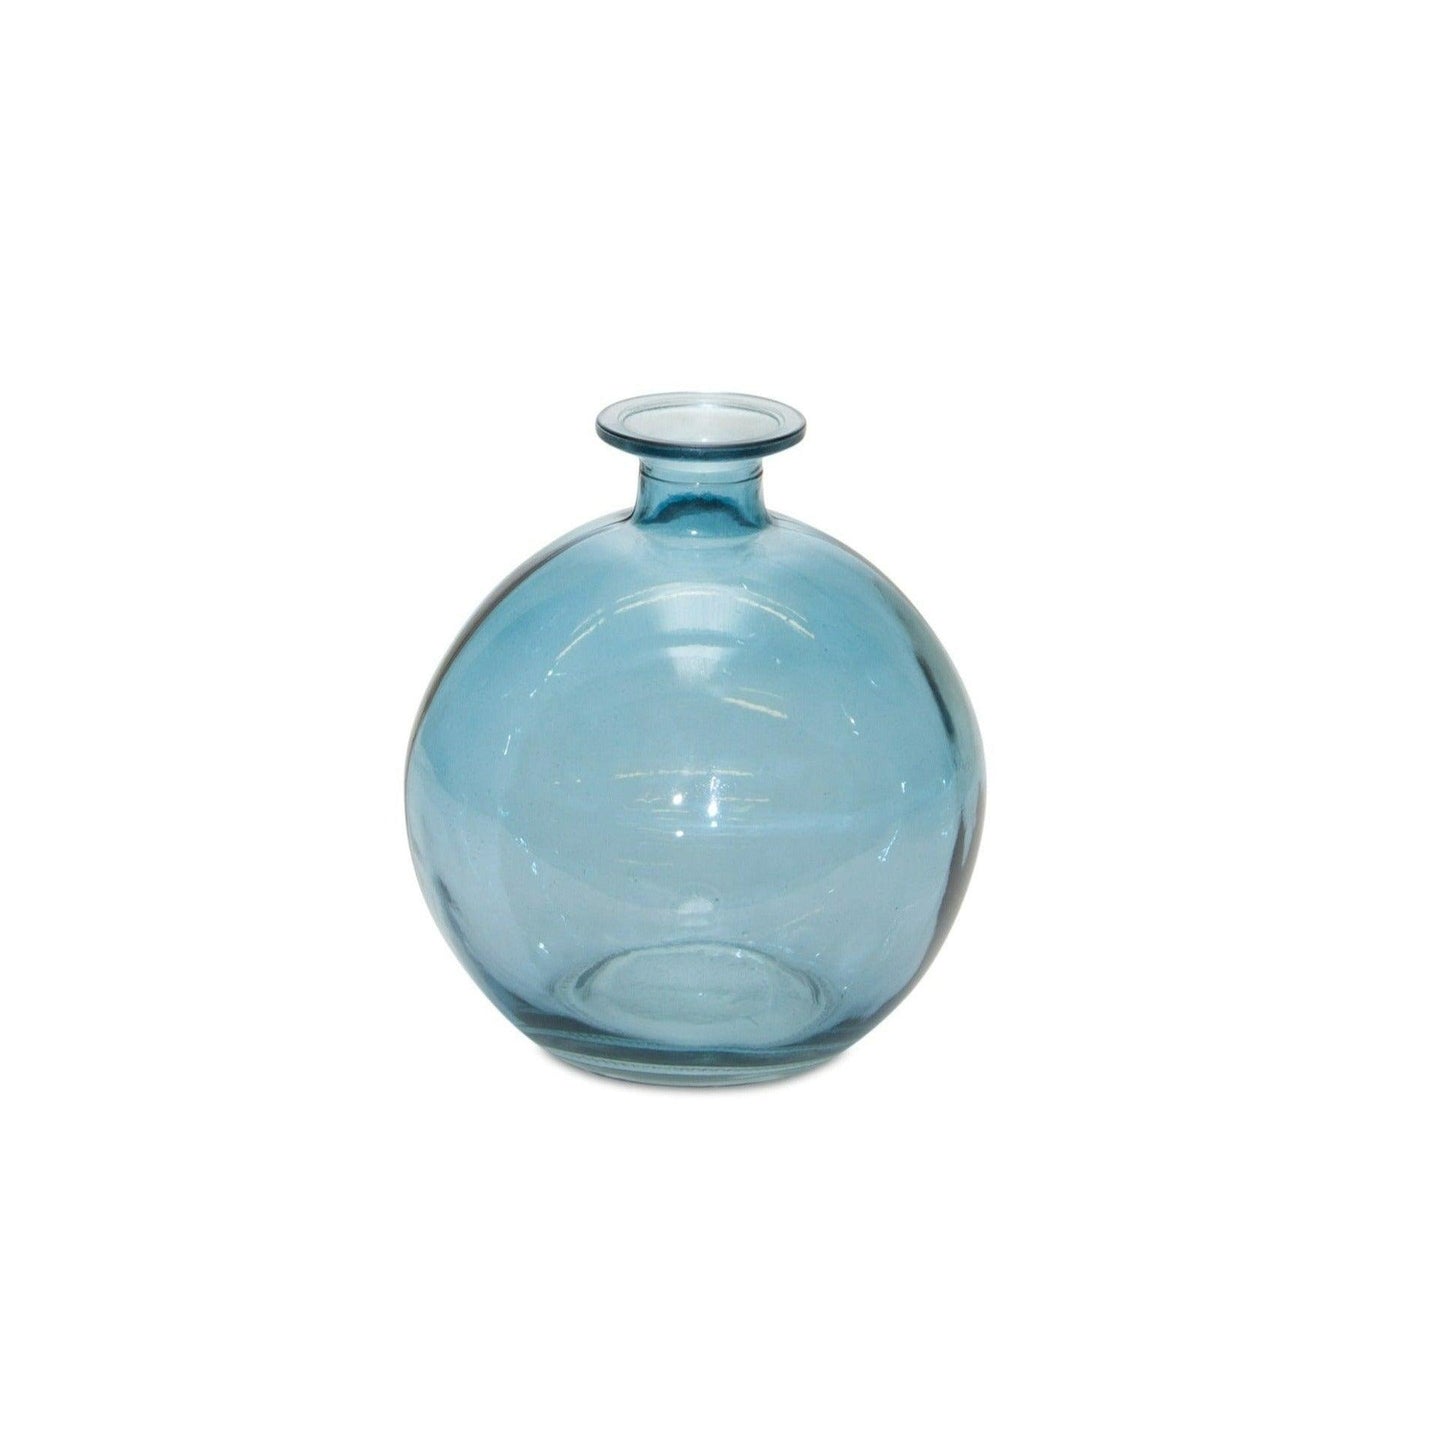 Blue Glass Table Vases Set of 2 - 6" Round Blue Mini Vases - Surfside Chic Decor